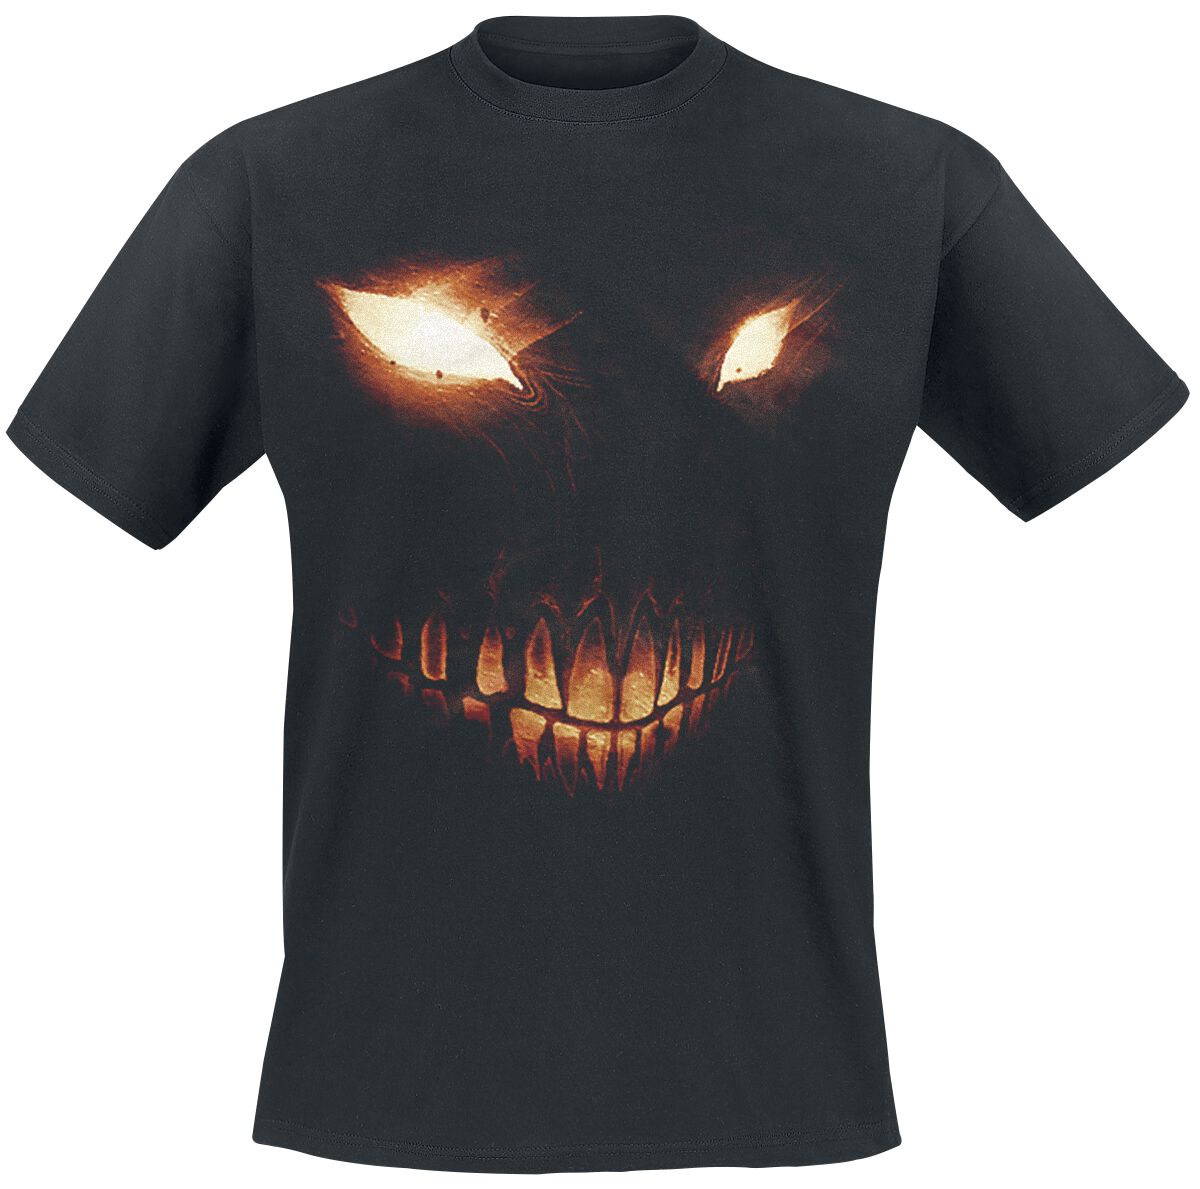 Disturbed T-Shirt - Bright Eyes - L bis 5XL - für Männer - Größe XL - schwarz  - Lizenziertes Merchandise!